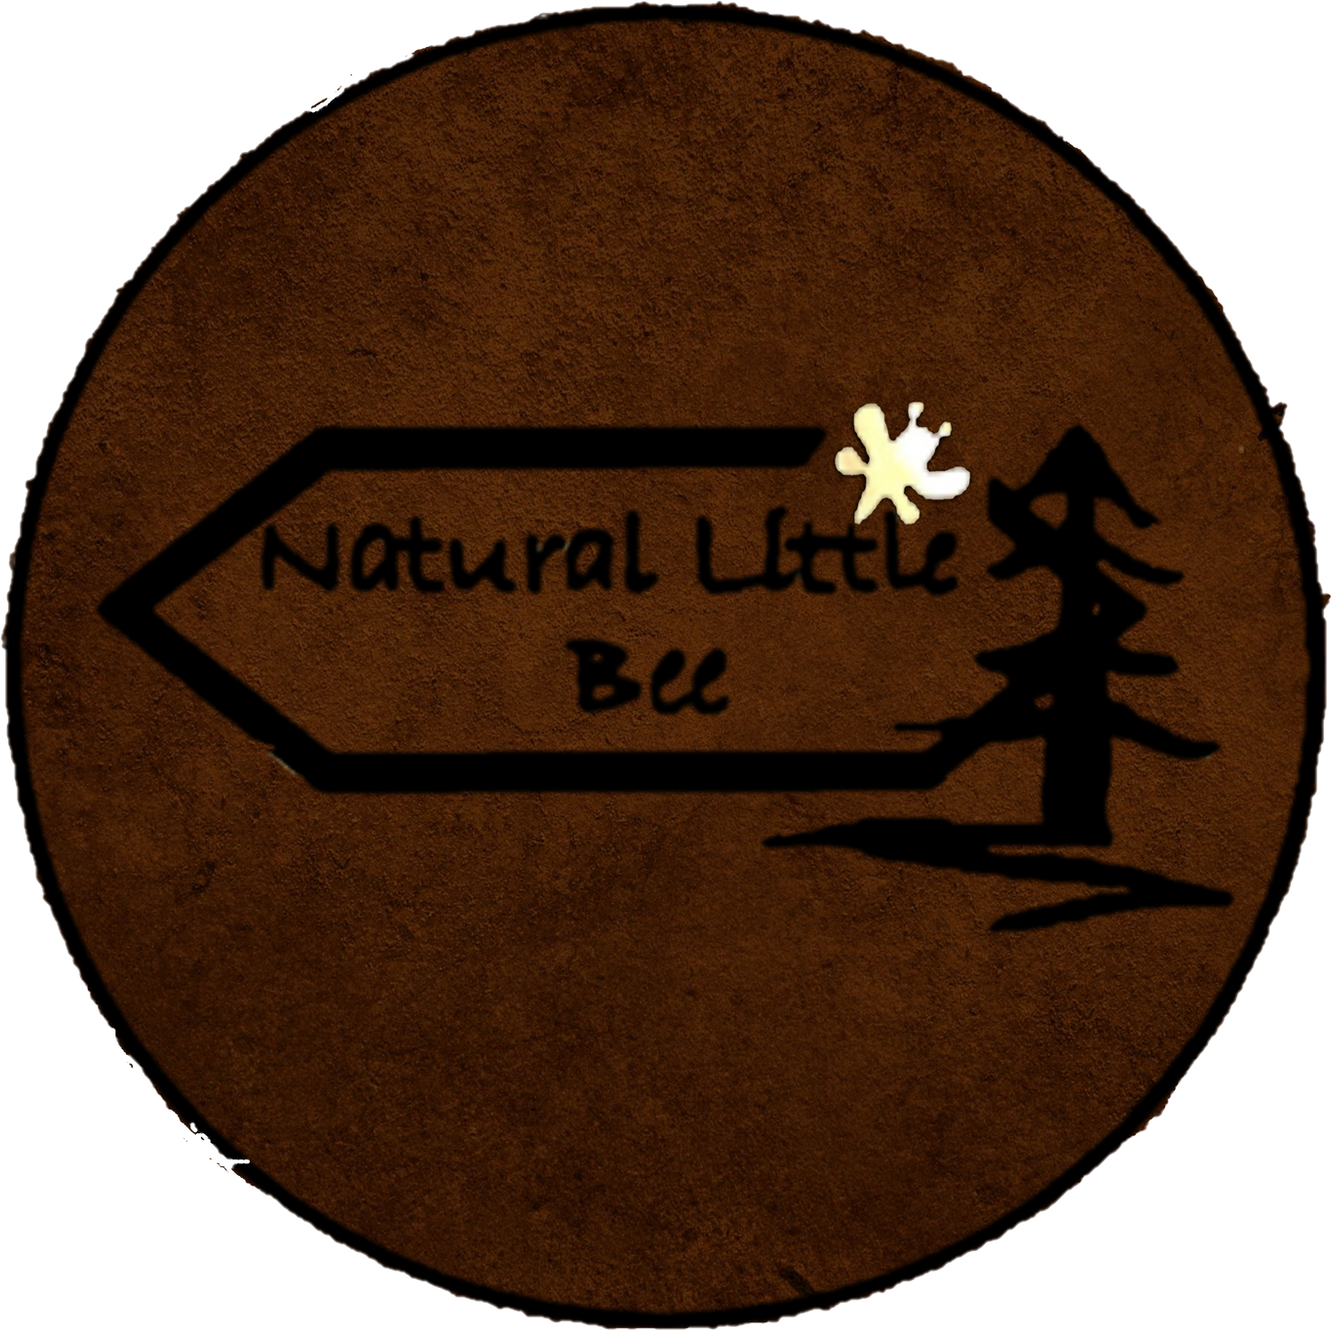 www.naturallittlebee.co.uk